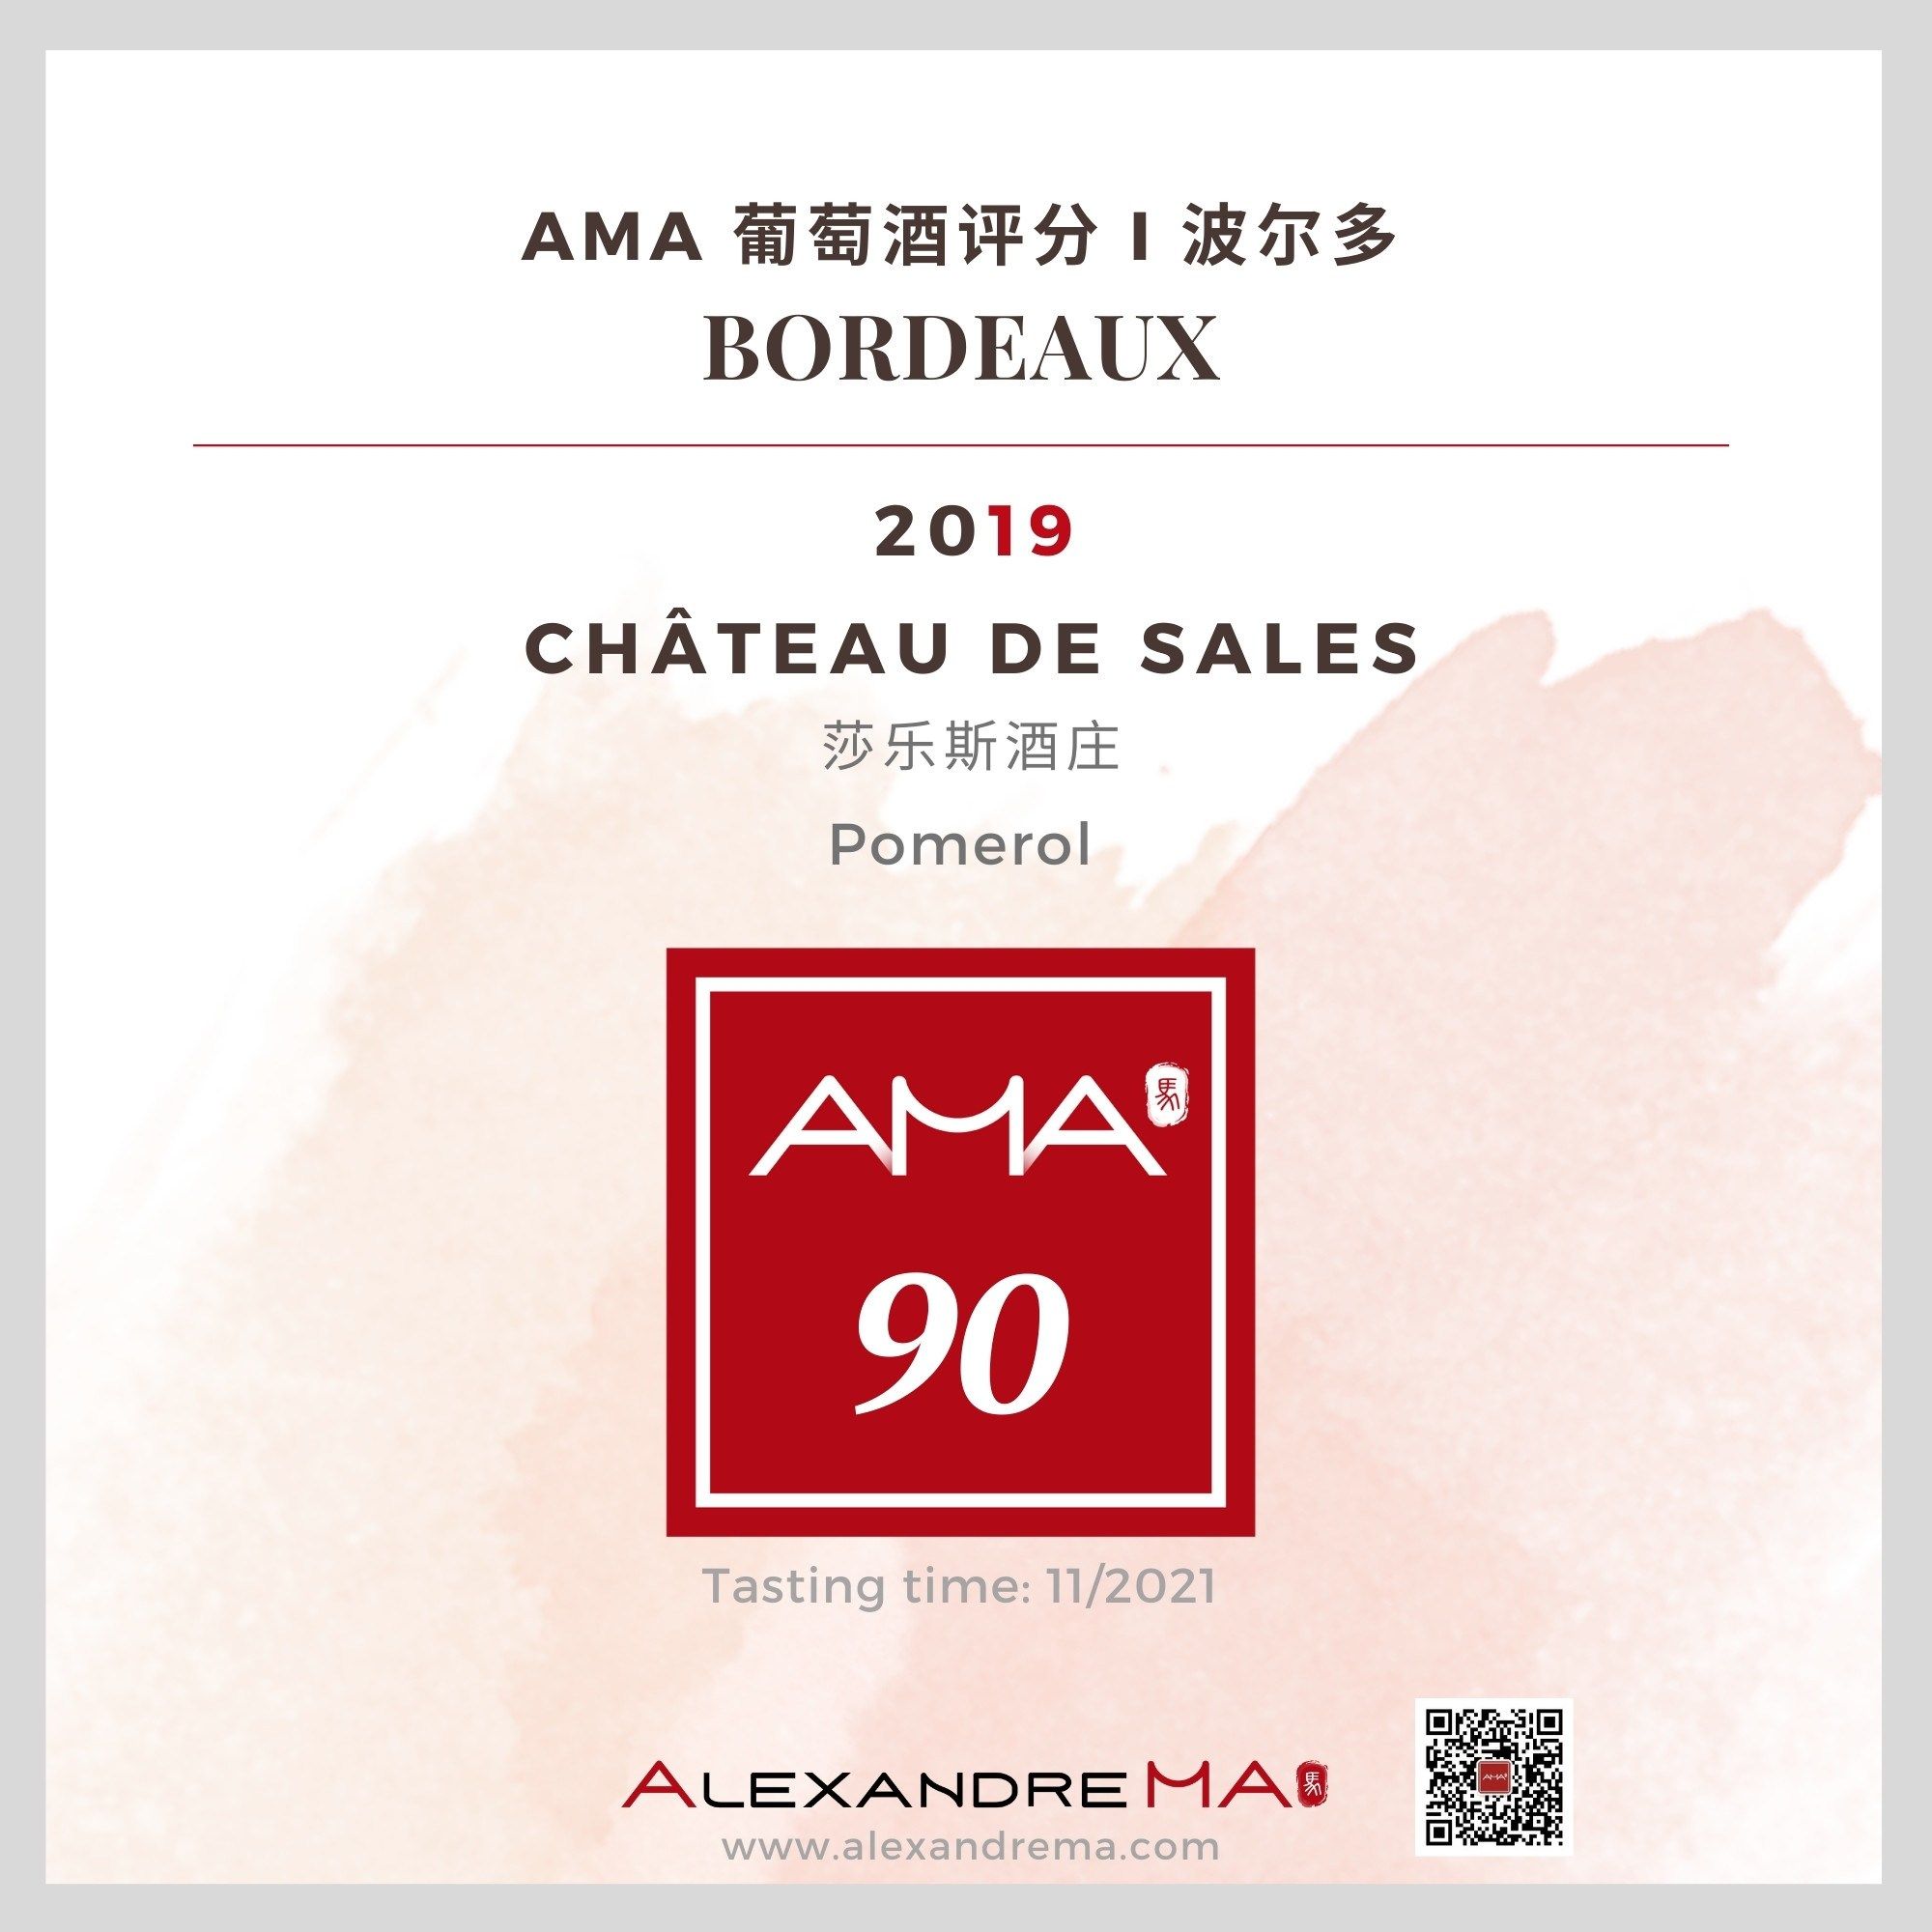 Château de Sales 2019 莎乐斯酒庄 - Alexandre Ma